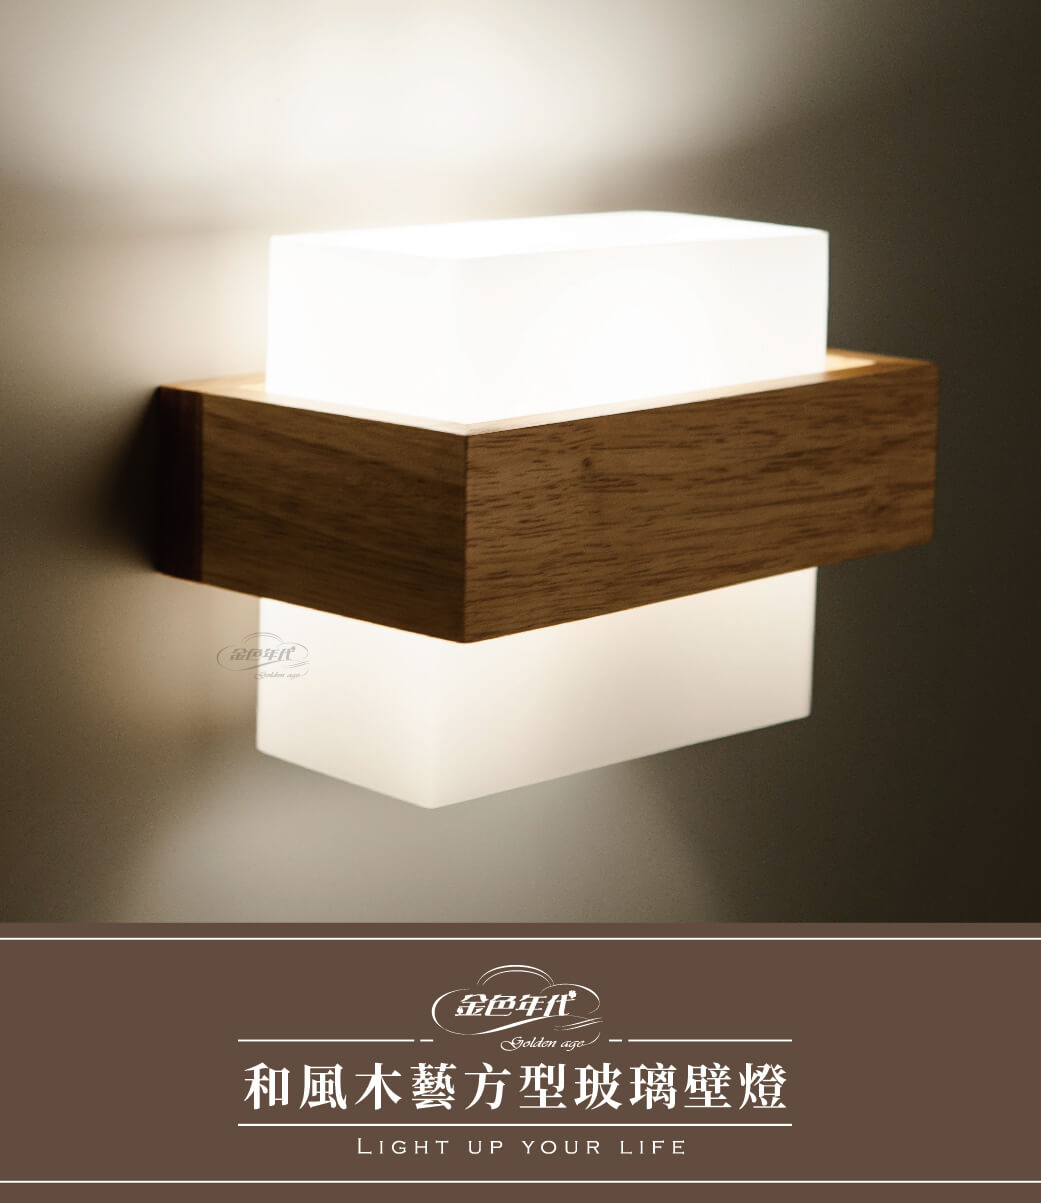 GA10官網圖文-和風木藝方型玻璃壁燈_01